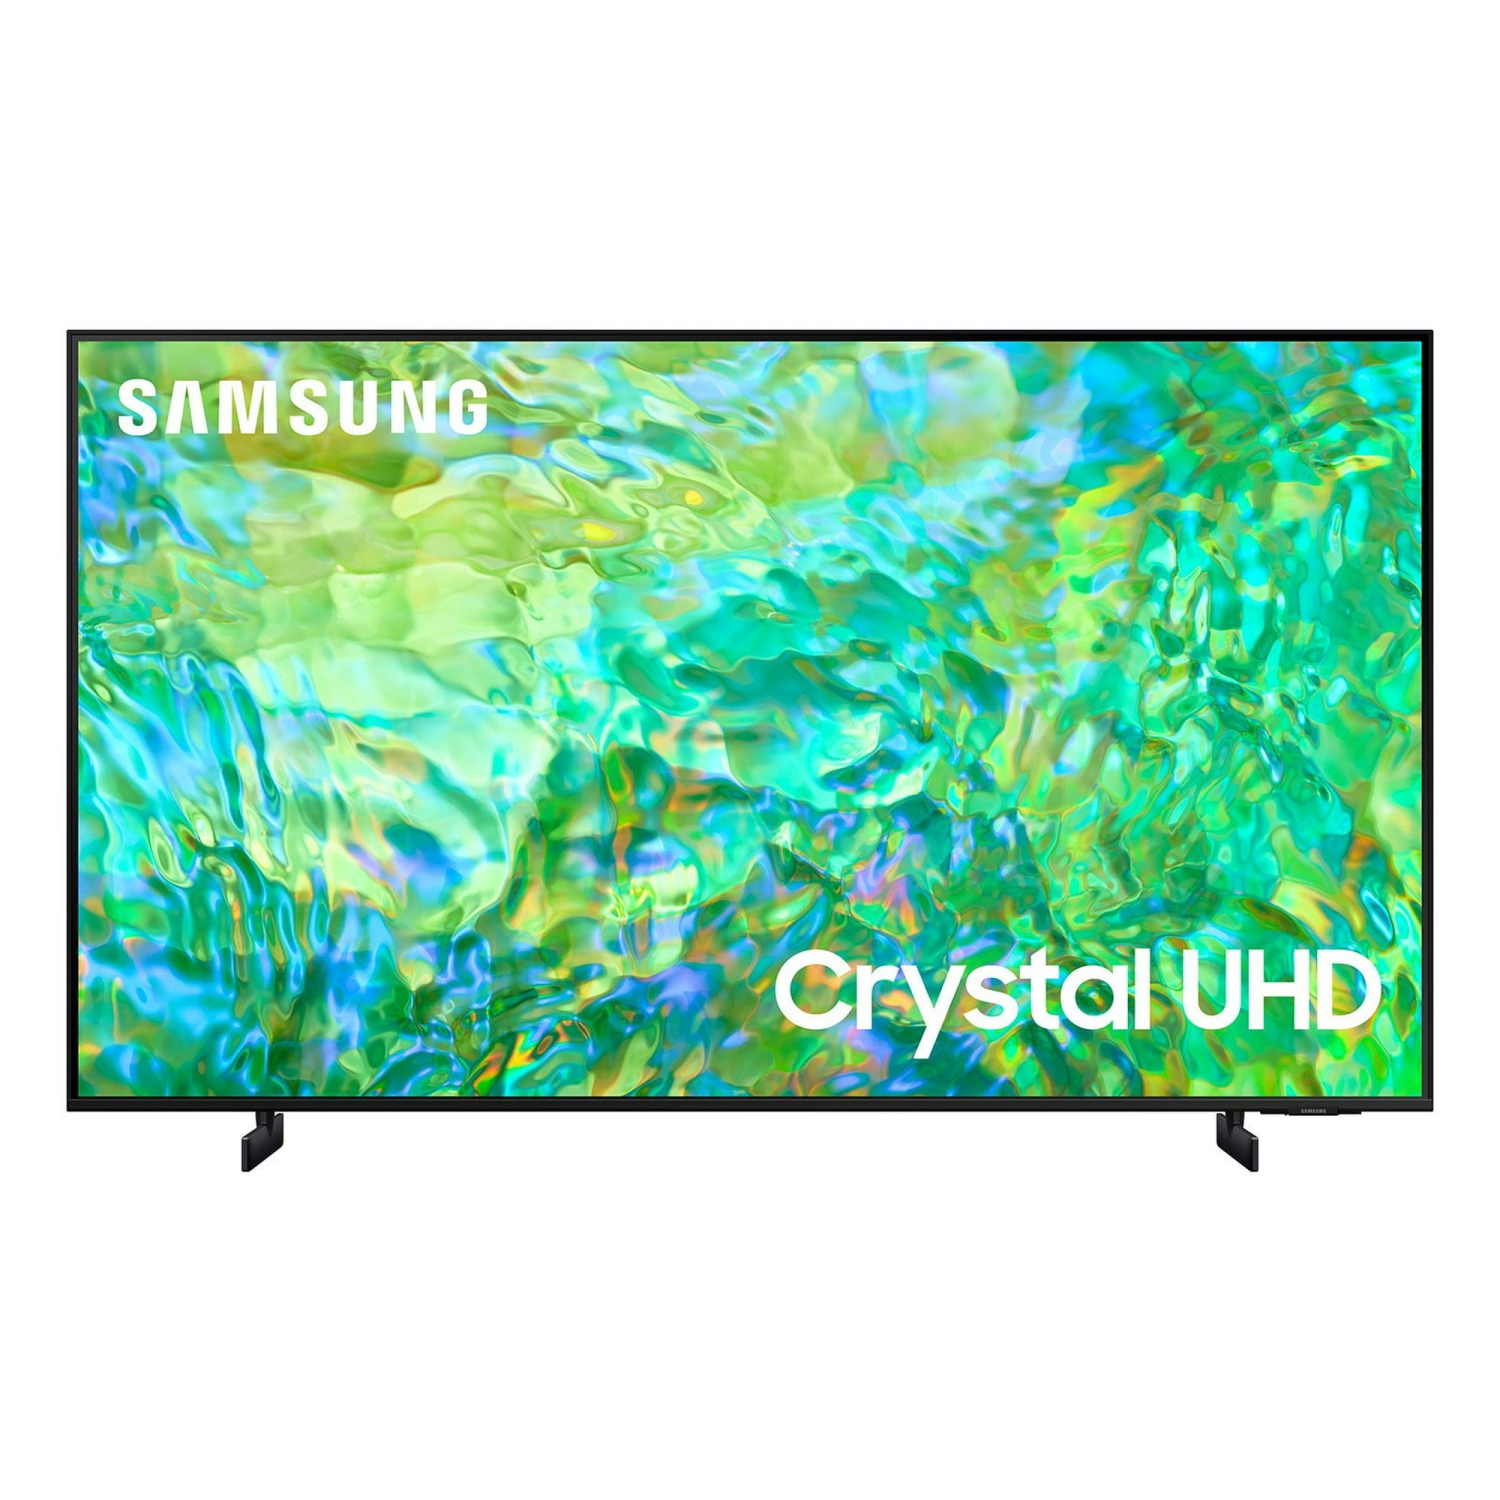 REFURBISHED (GOOD) - SAMSUNG 55" Class CU8000B Crystal UHD 4K Smart TV (UN55CU8000B)